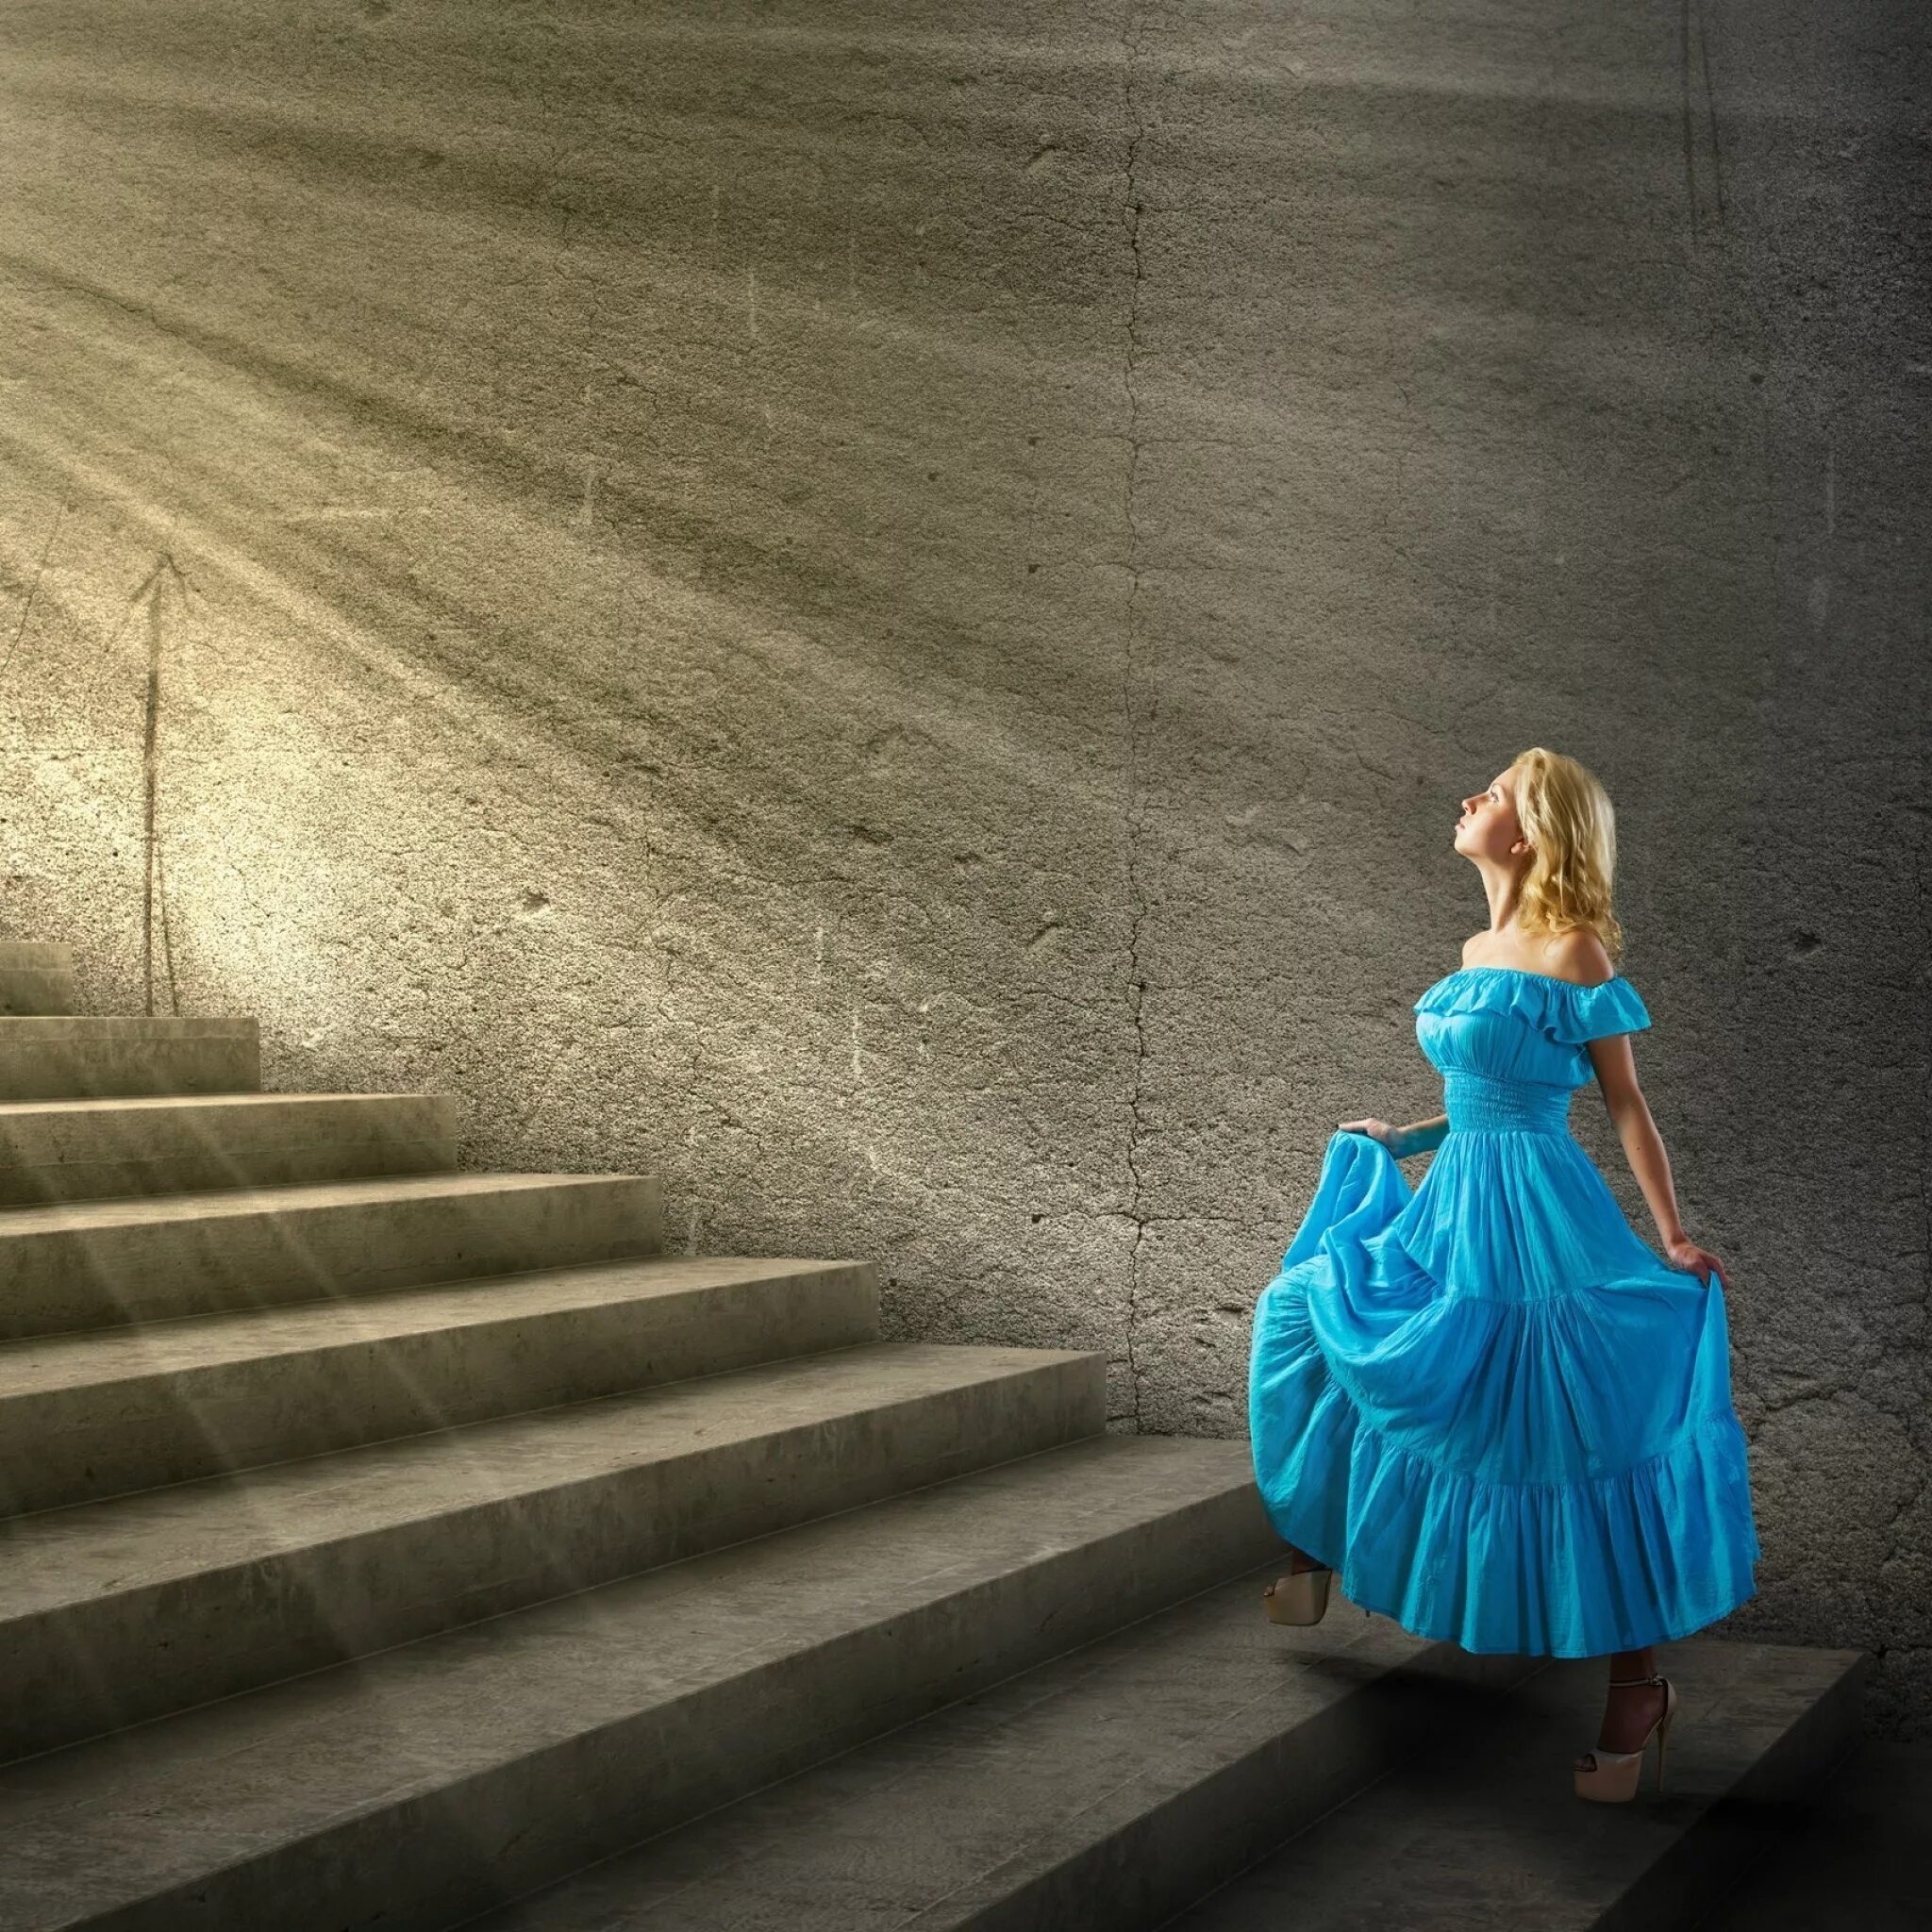 Девушка поднимается по лестнице. Девушка в платье. Девушка в платье на ступеньках. Девушка на лестнице в платье.